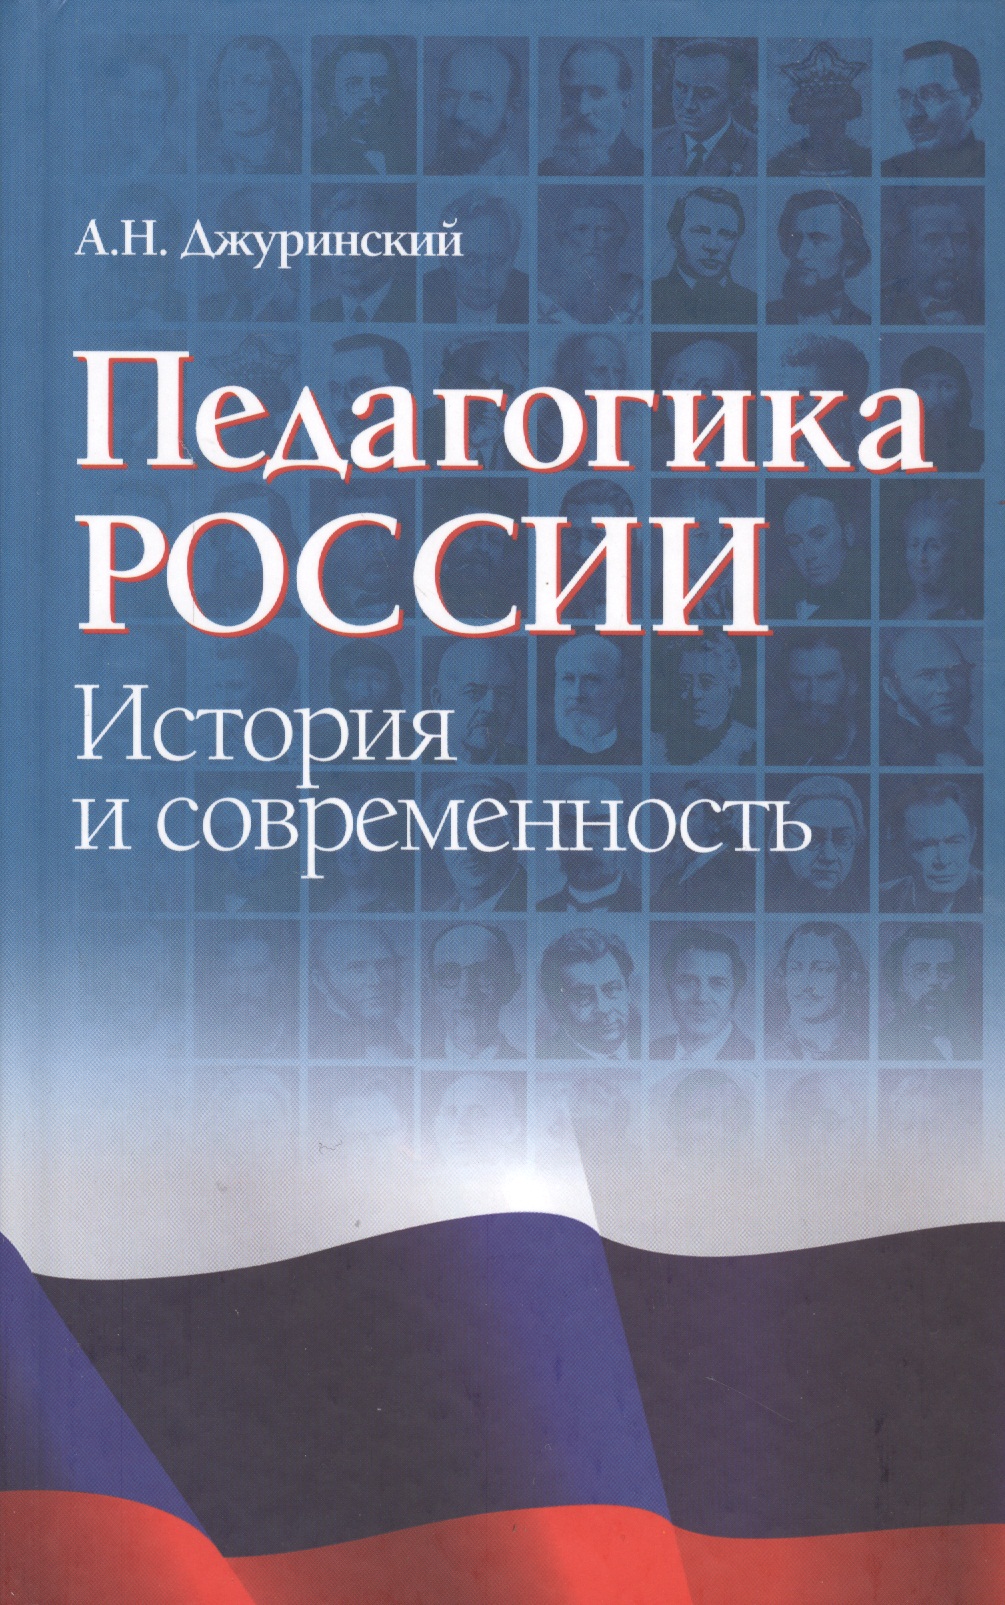 Педагогика России: история и современность